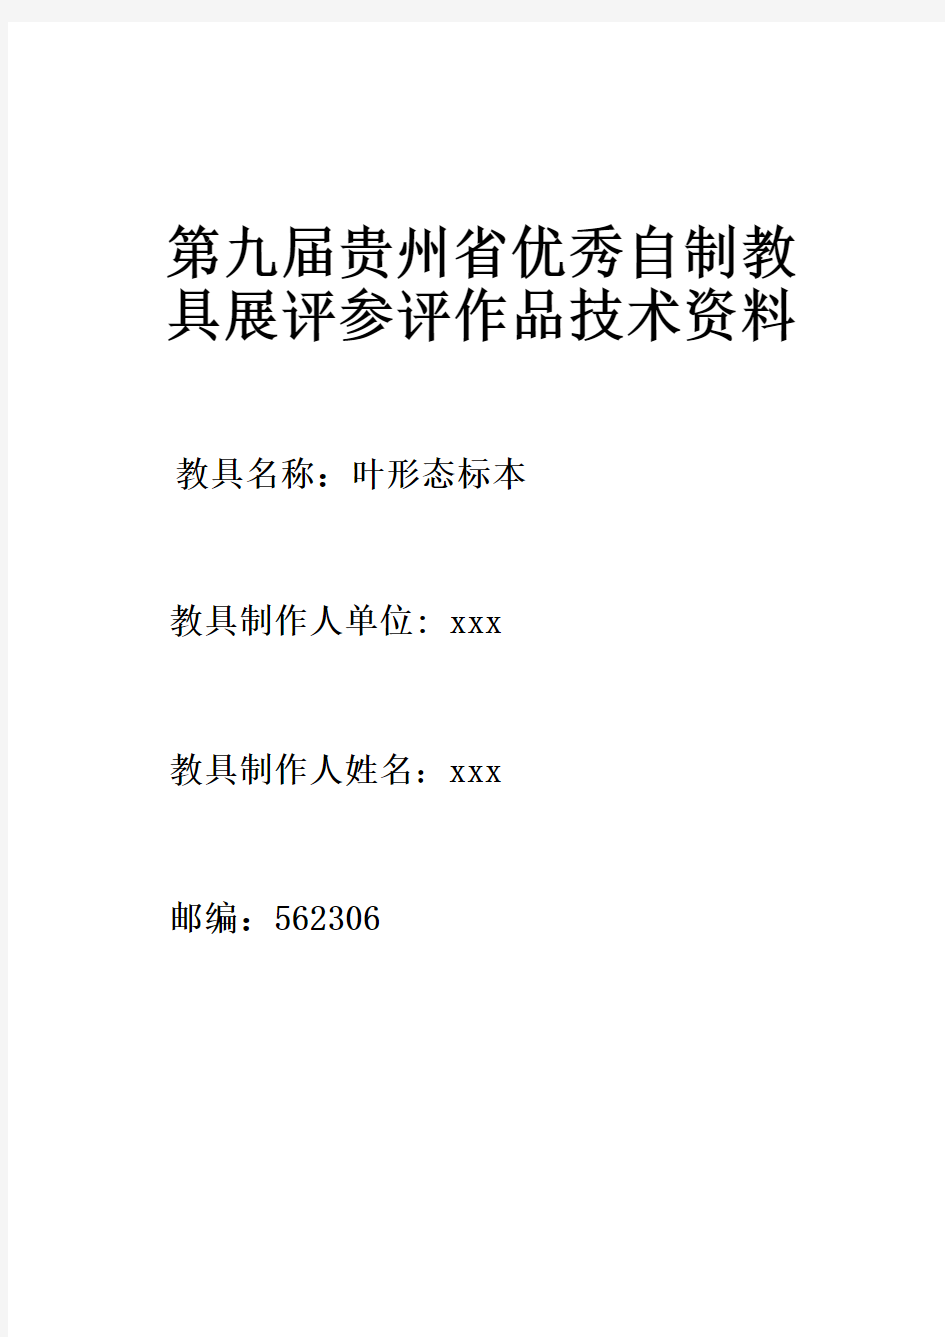 第九届贵州省优秀自制教具展评参评作品技术资料  ---xxx